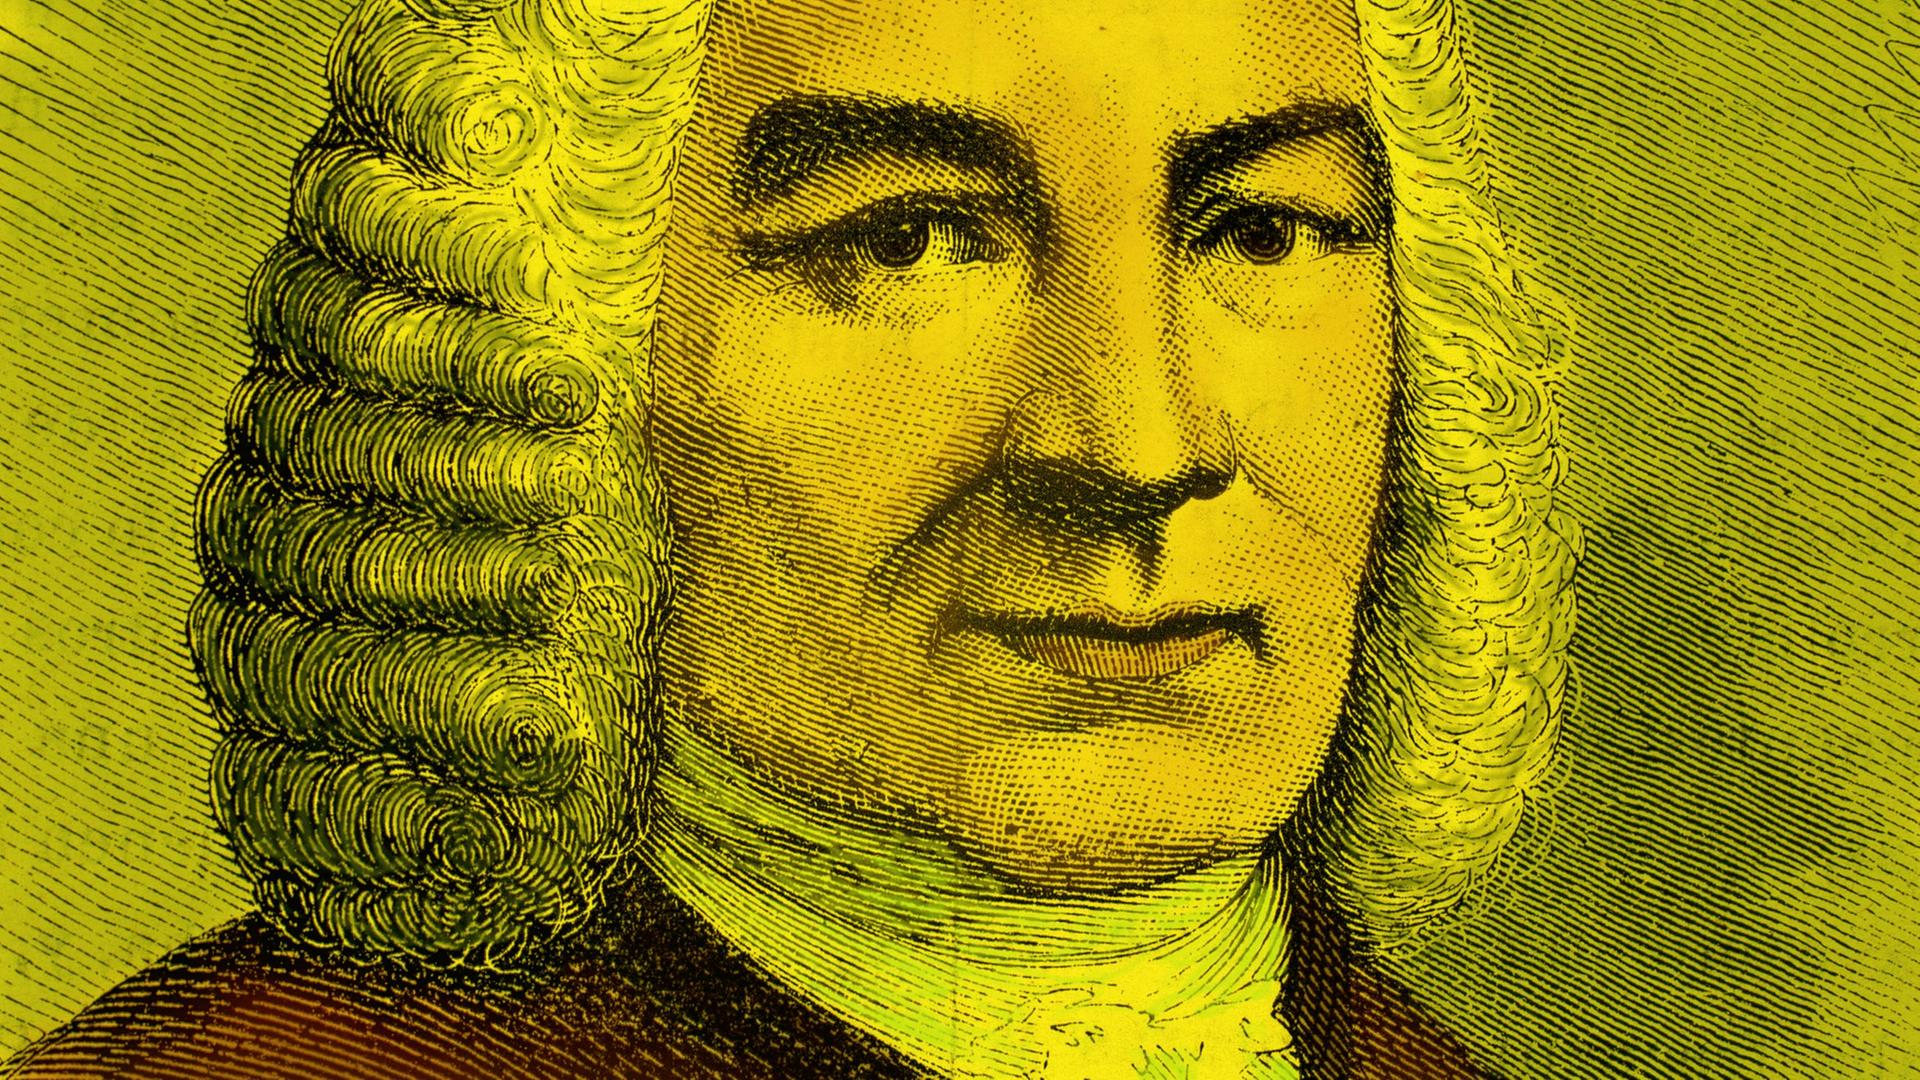 Gelb eingefärbtes, koloriertes Bild von Johann Sebastian Bach